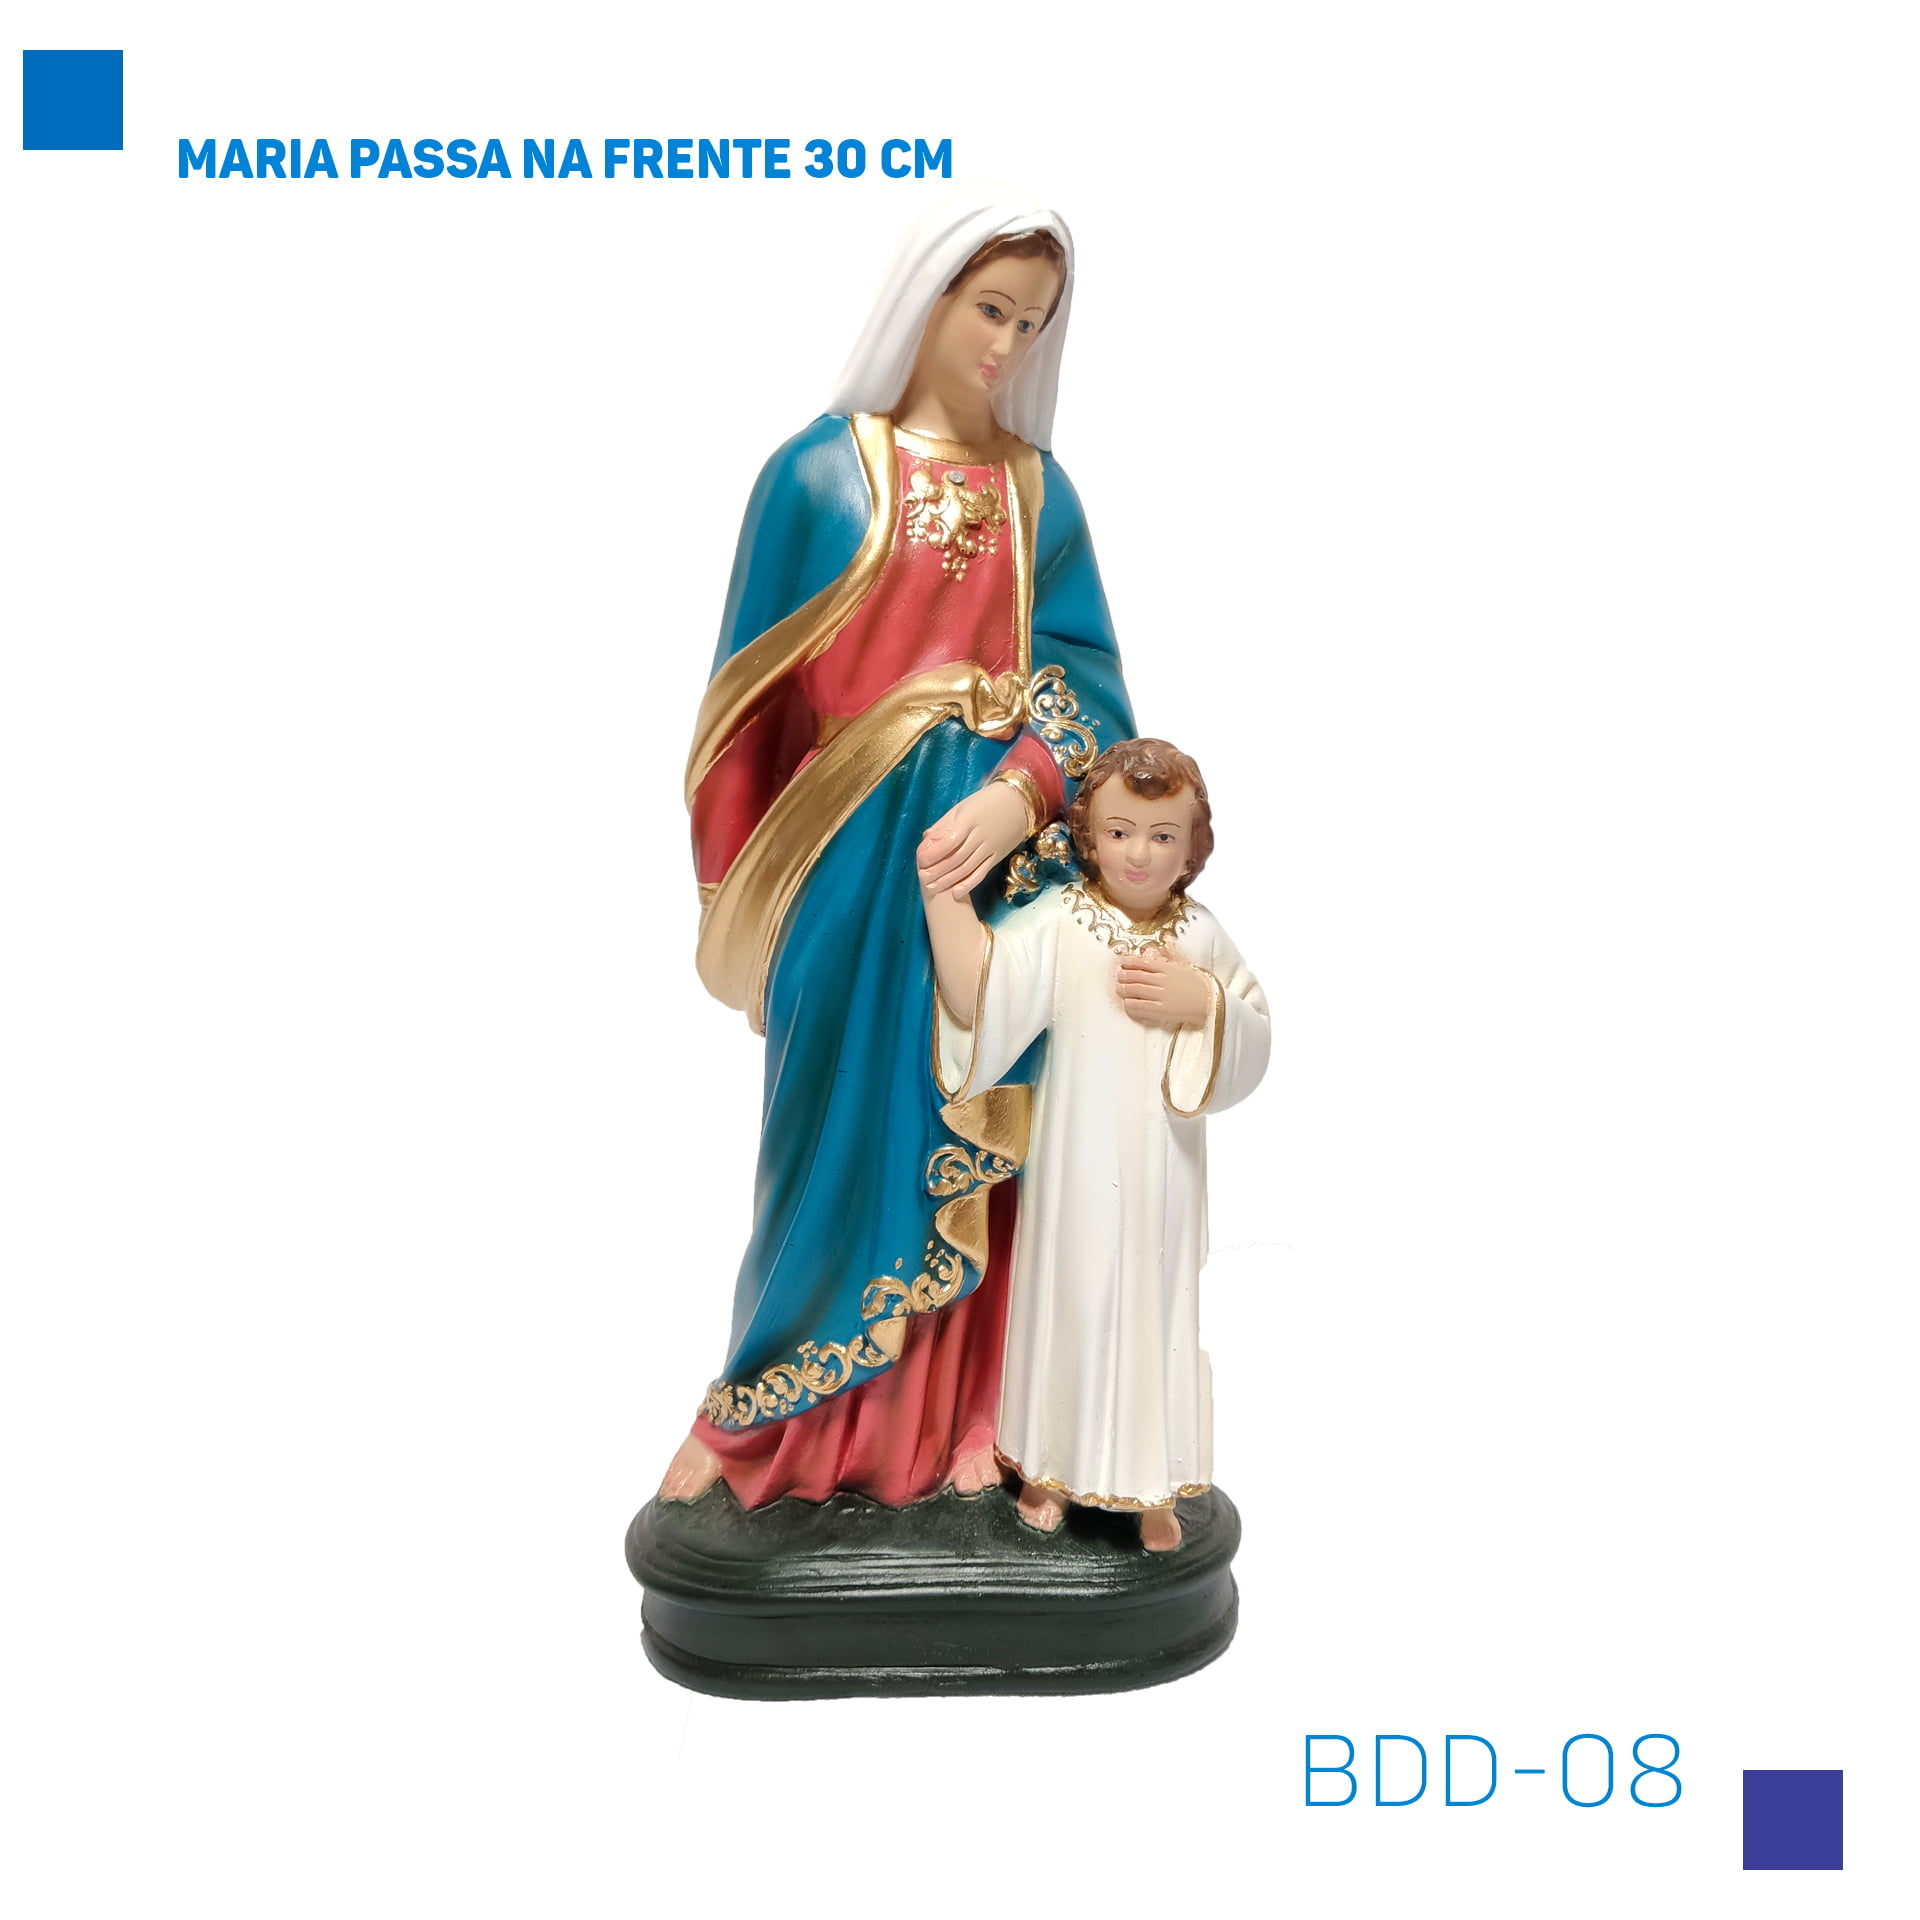 Bira Artigos Religiosos - Maria Passa na Frente 30 cm  - BDD-08